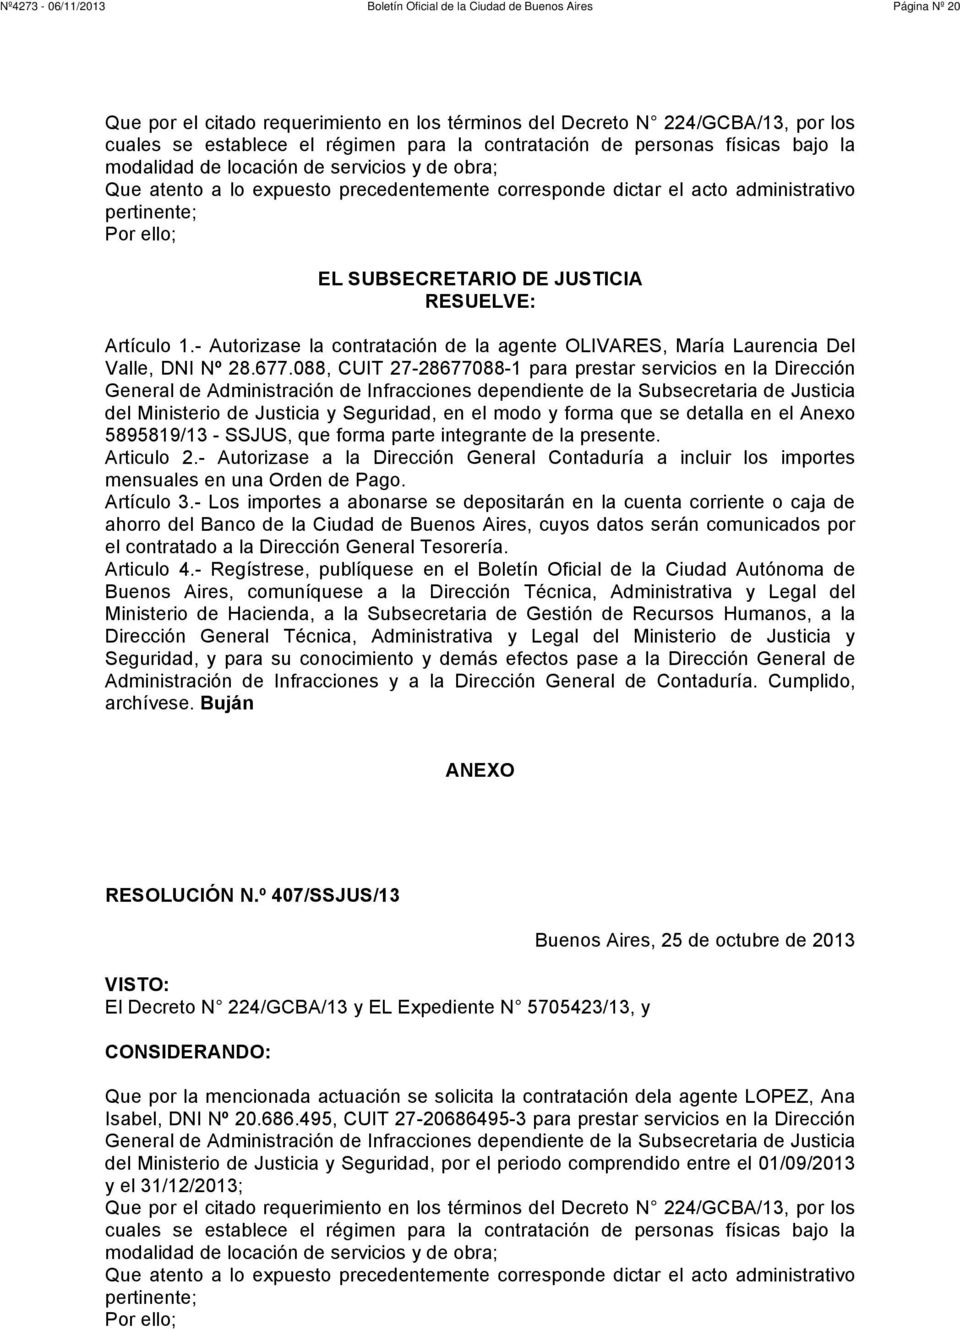 - Autorizase la contratación de la agente OLIVARES, María Laurencia Del Valle, DNI Nº 28.677.